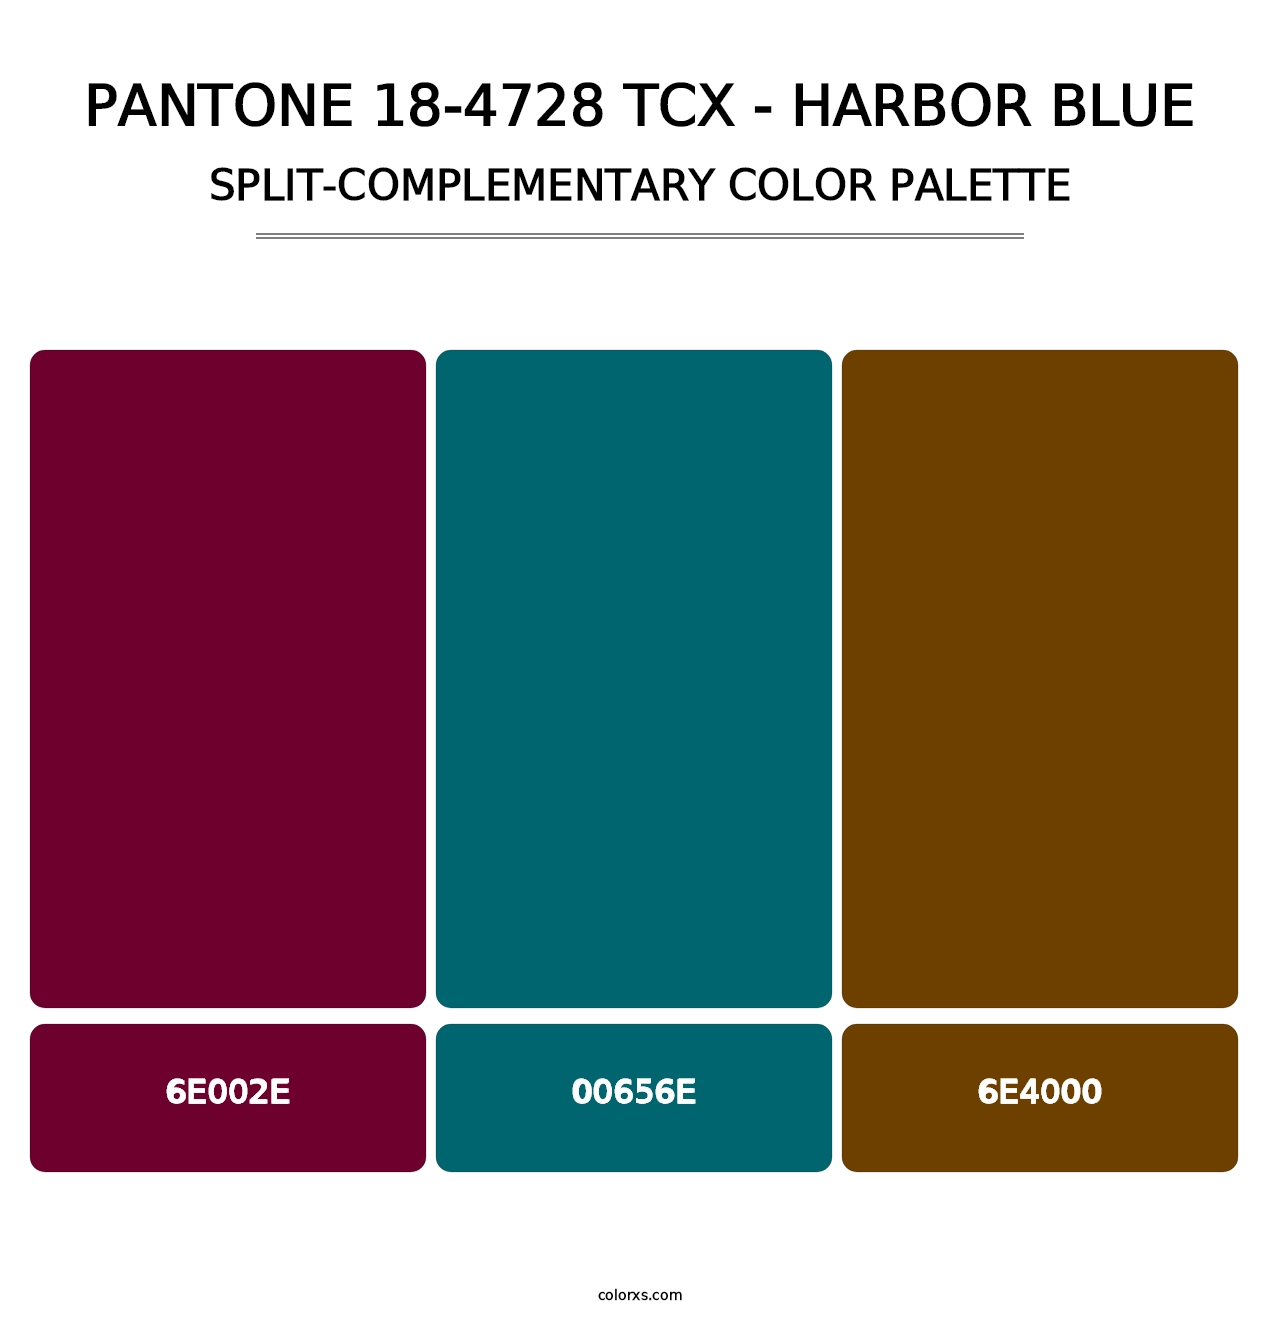 PANTONE 18-4728 TCX - Harbor Blue - Split-Complementary Color Palette